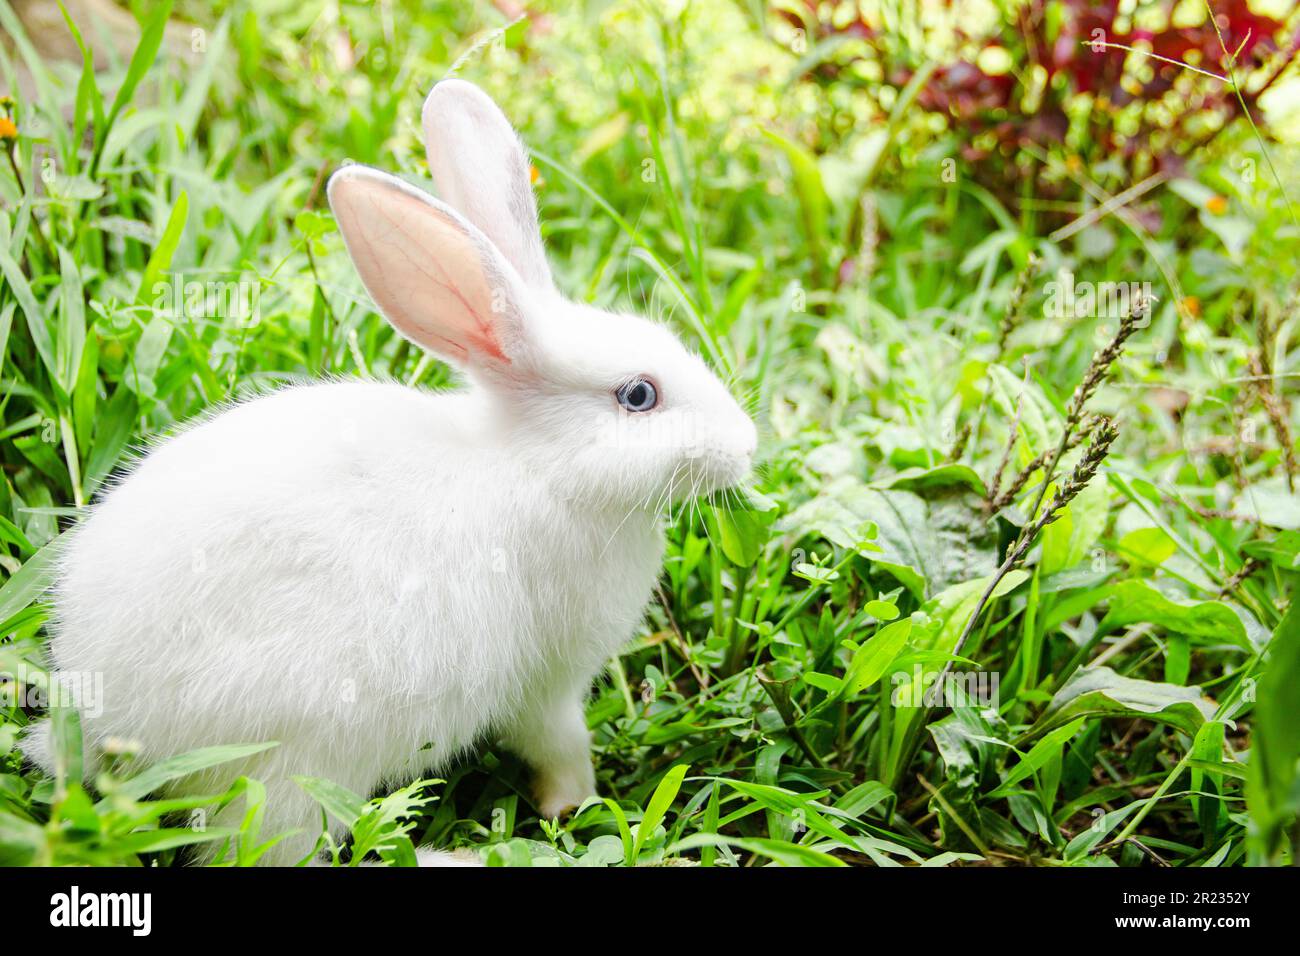 Kleines weißes Kaninchen in einem grünen Garten und Gras essen im Sommer ostern Konzept zum Feiern, niedliches Tier und hübsches Haustier Stockfoto